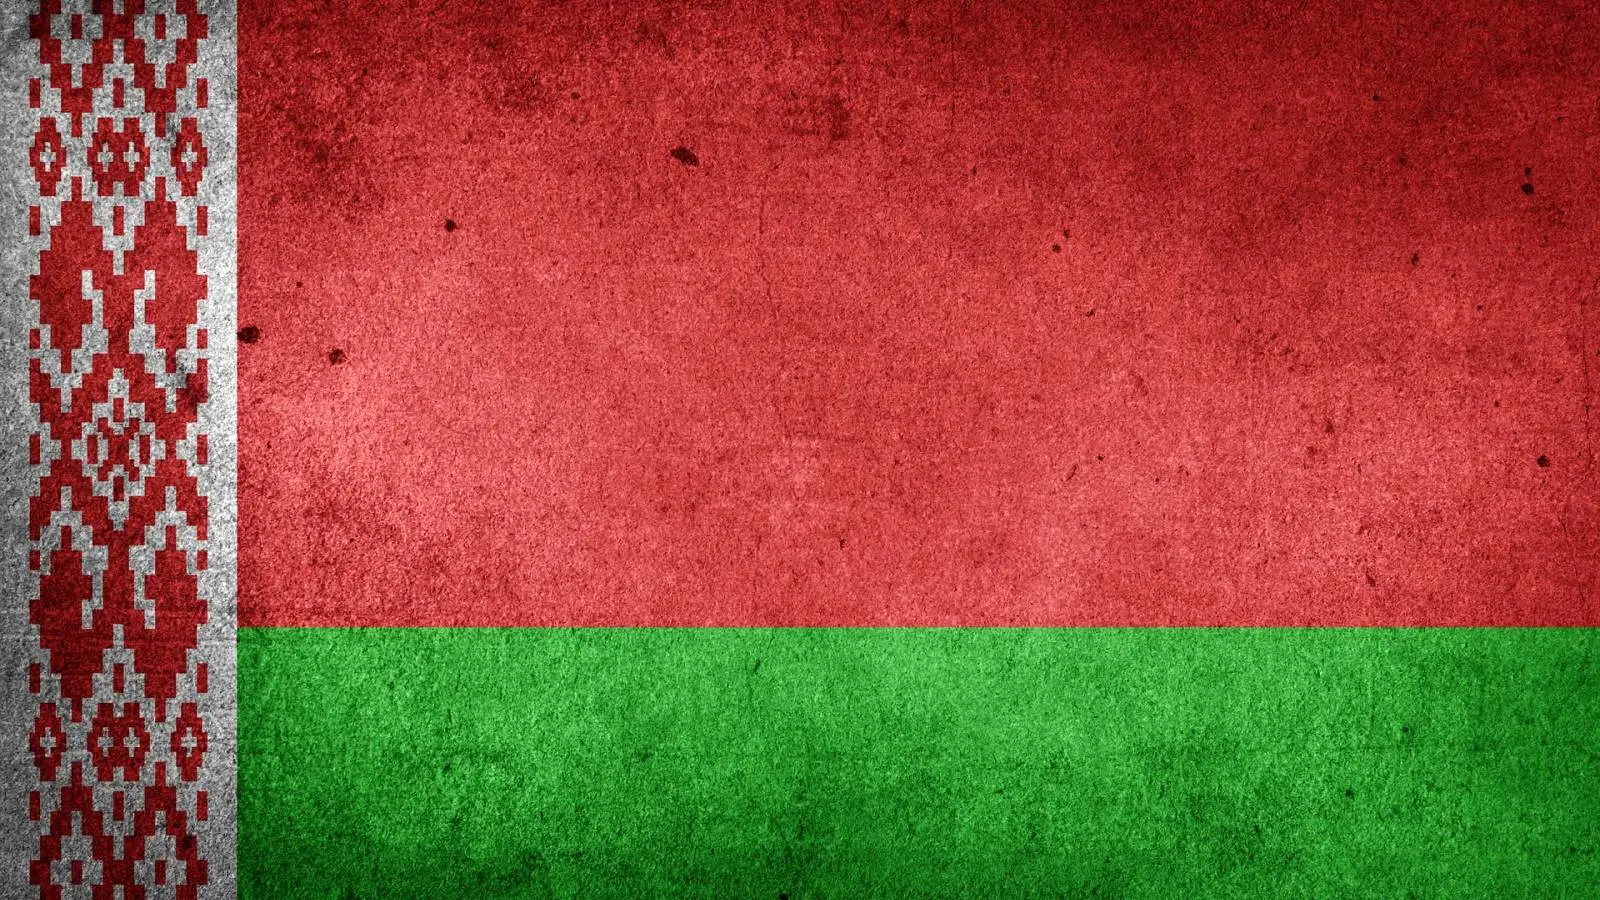 Valko-Venäjä ei aio mobilisoida armeijaa auttamaan Venäjää sodassa